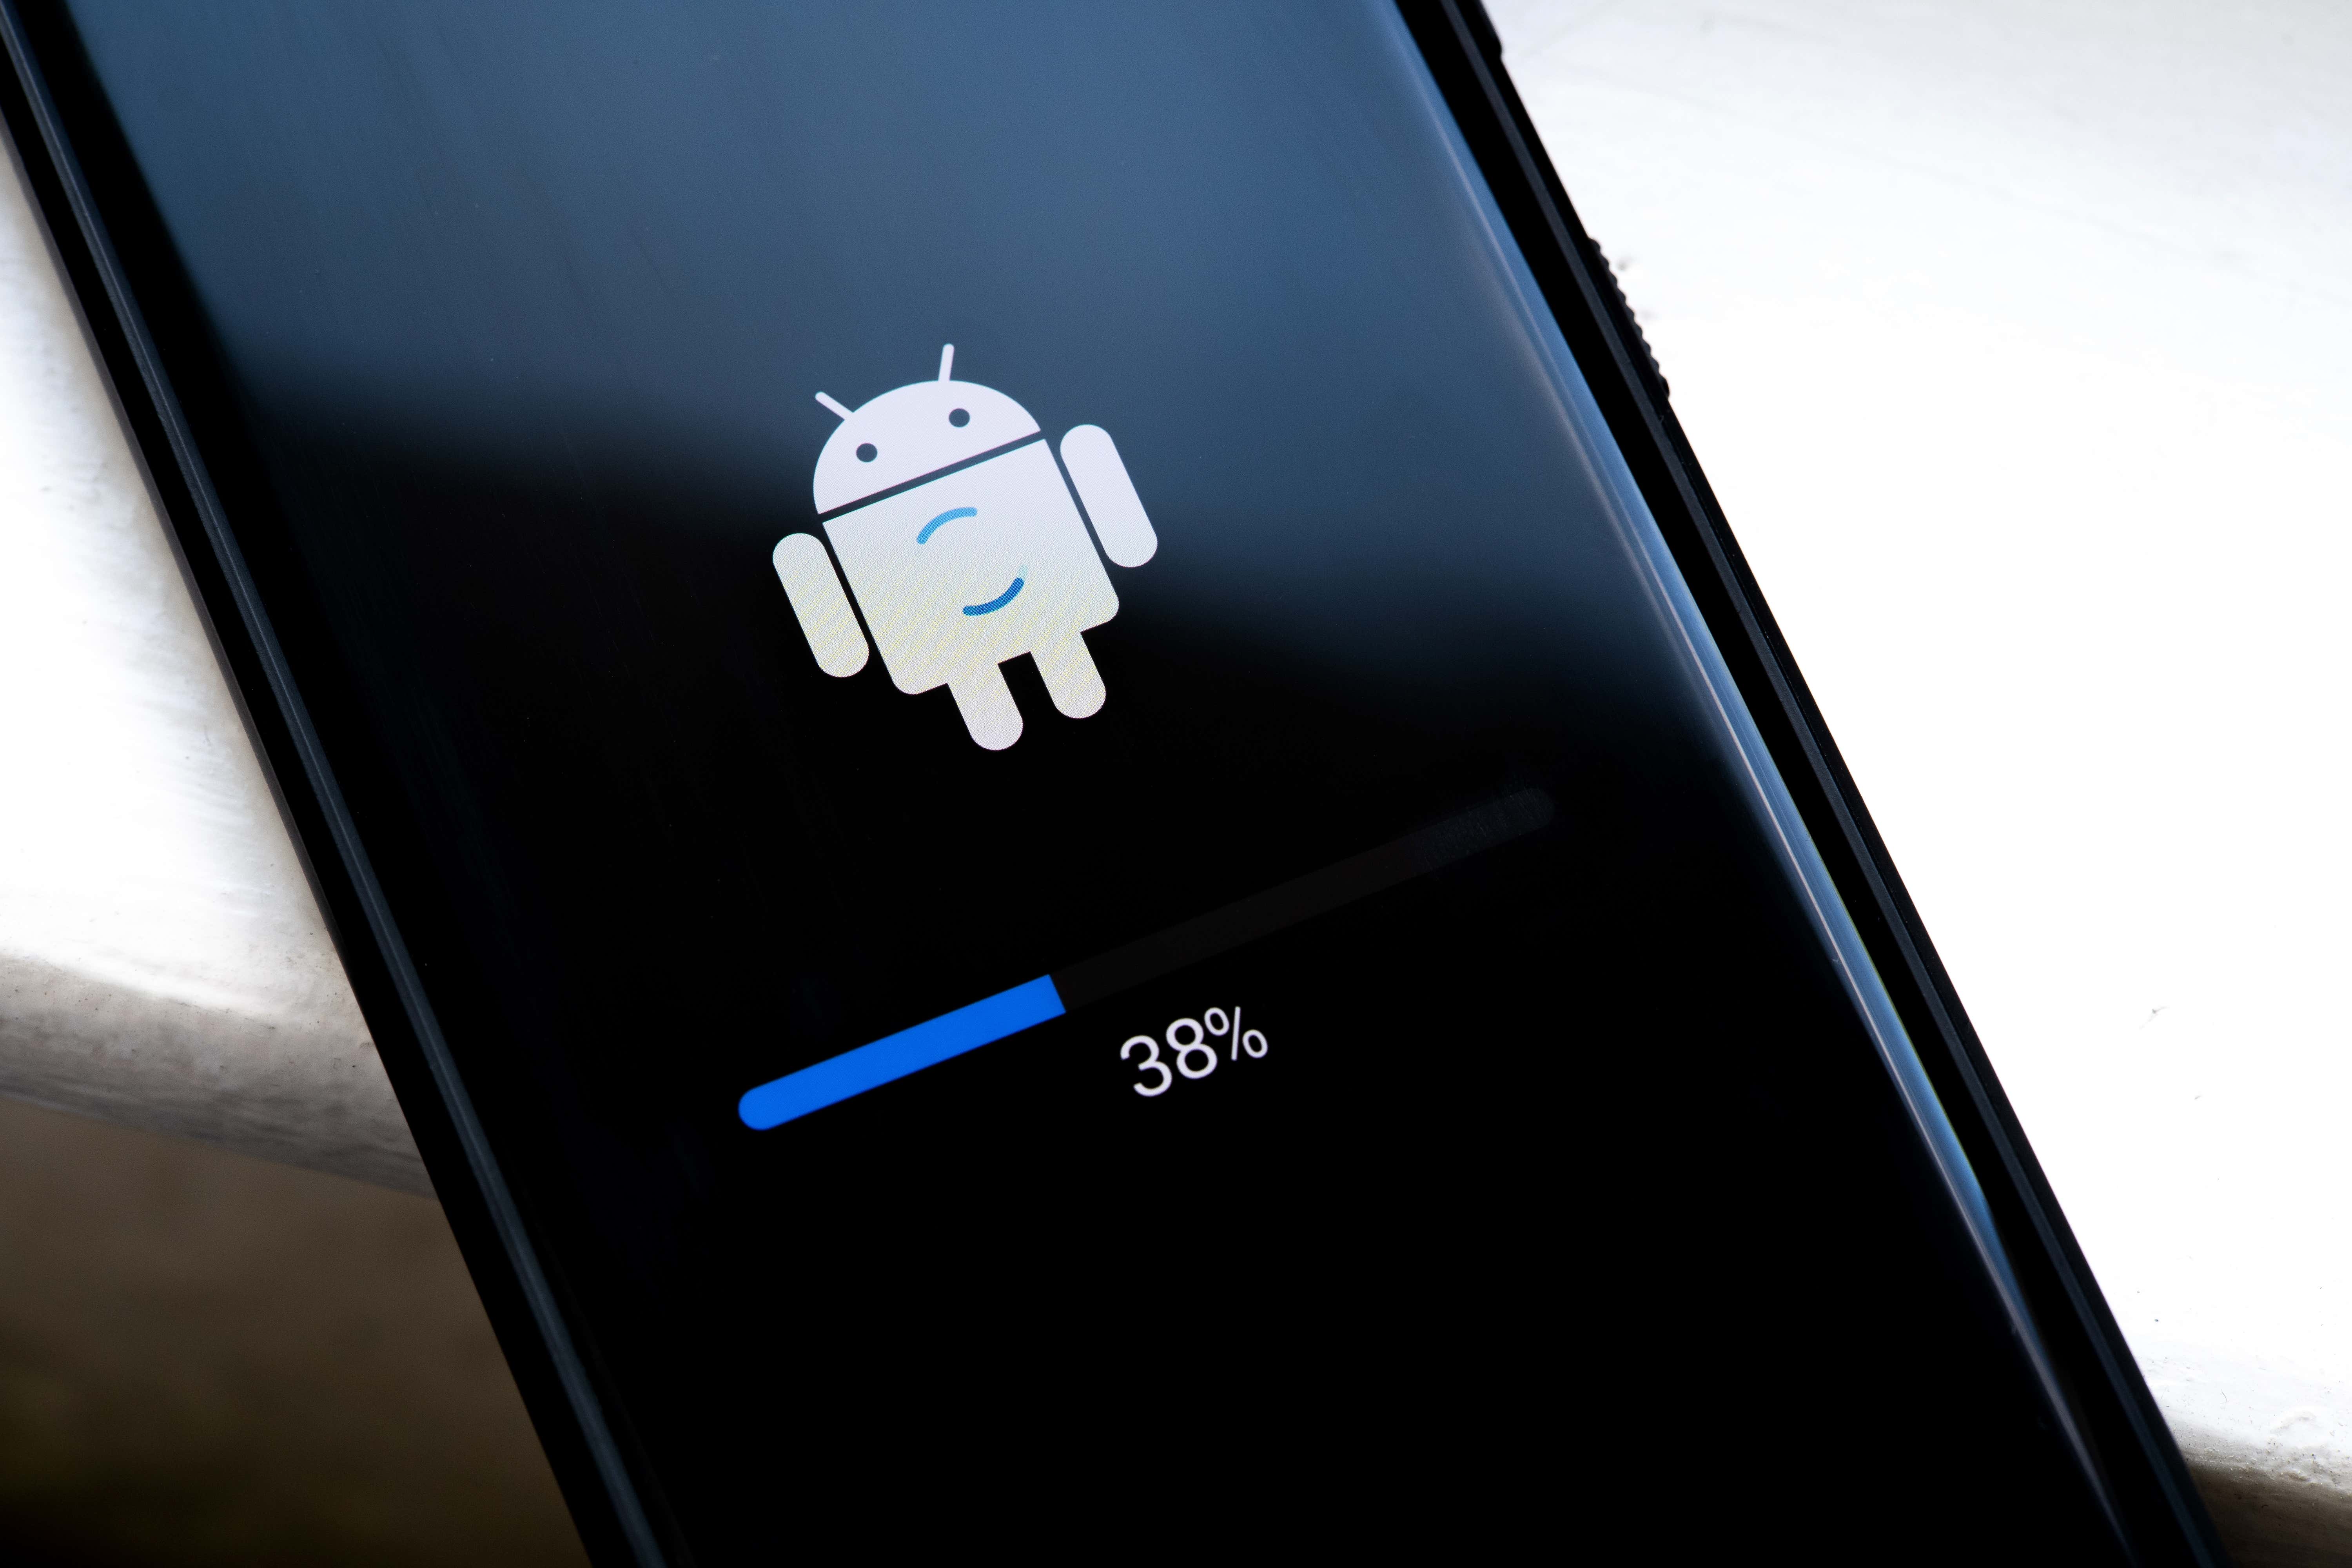 Geliştiriciler Önizlemeye Erişim Sağlarken Android 15 Daha Fazla Gizlilik Vaat Ediyor başlıklı makalenin resmi